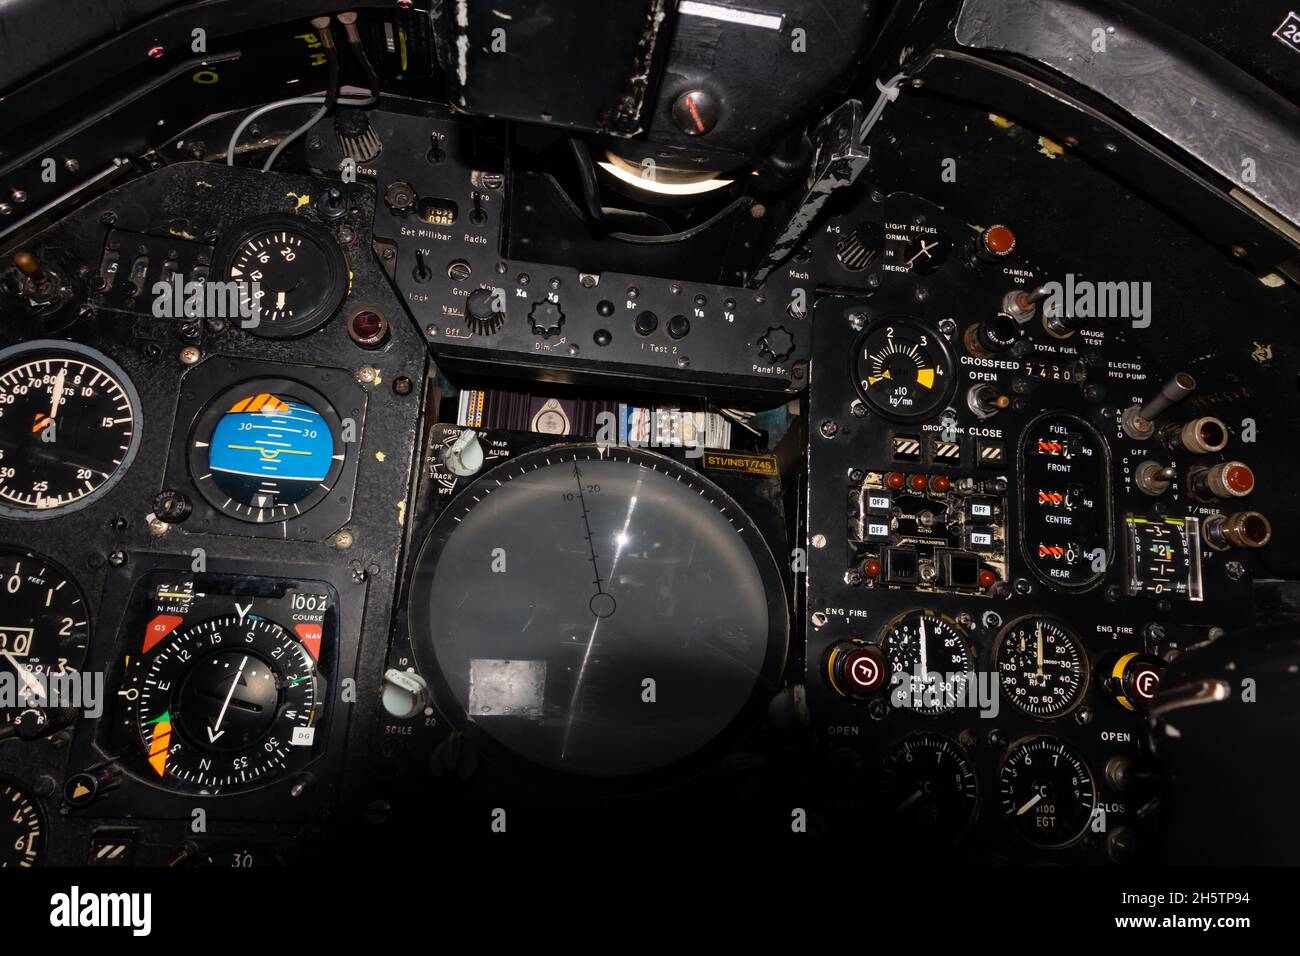 Tableau de bord du cockpit d'avion de chasse Royal Air Force Sepecat Jaguar GR1 Guerre froide.Vue POV des pilotes. Banque D'Images